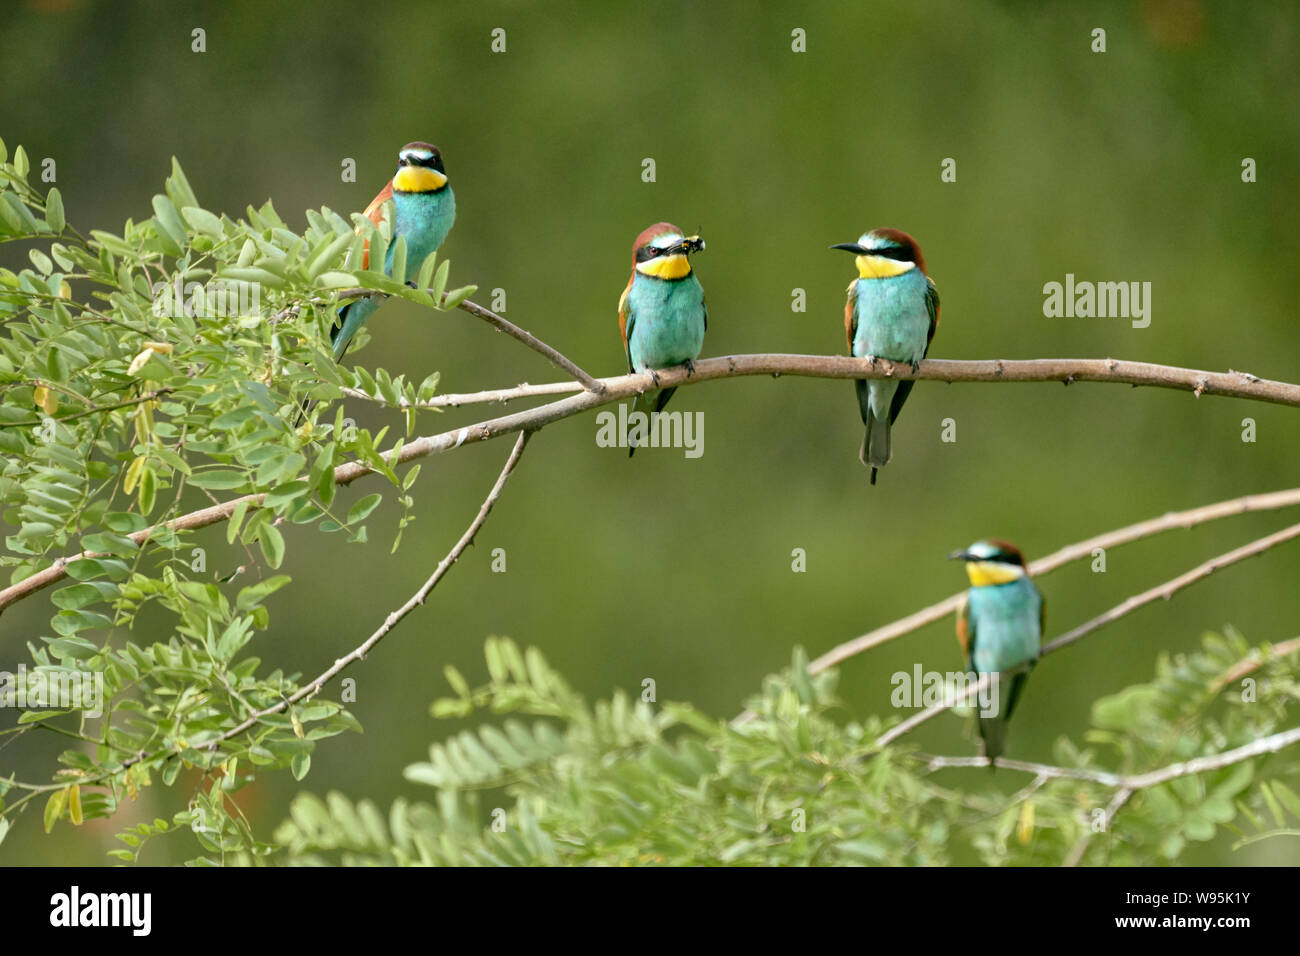 Cuatro pájaros abejorros europeos encaramados en una rama verde Naturaleza (Merops apiaster) Foto de stock